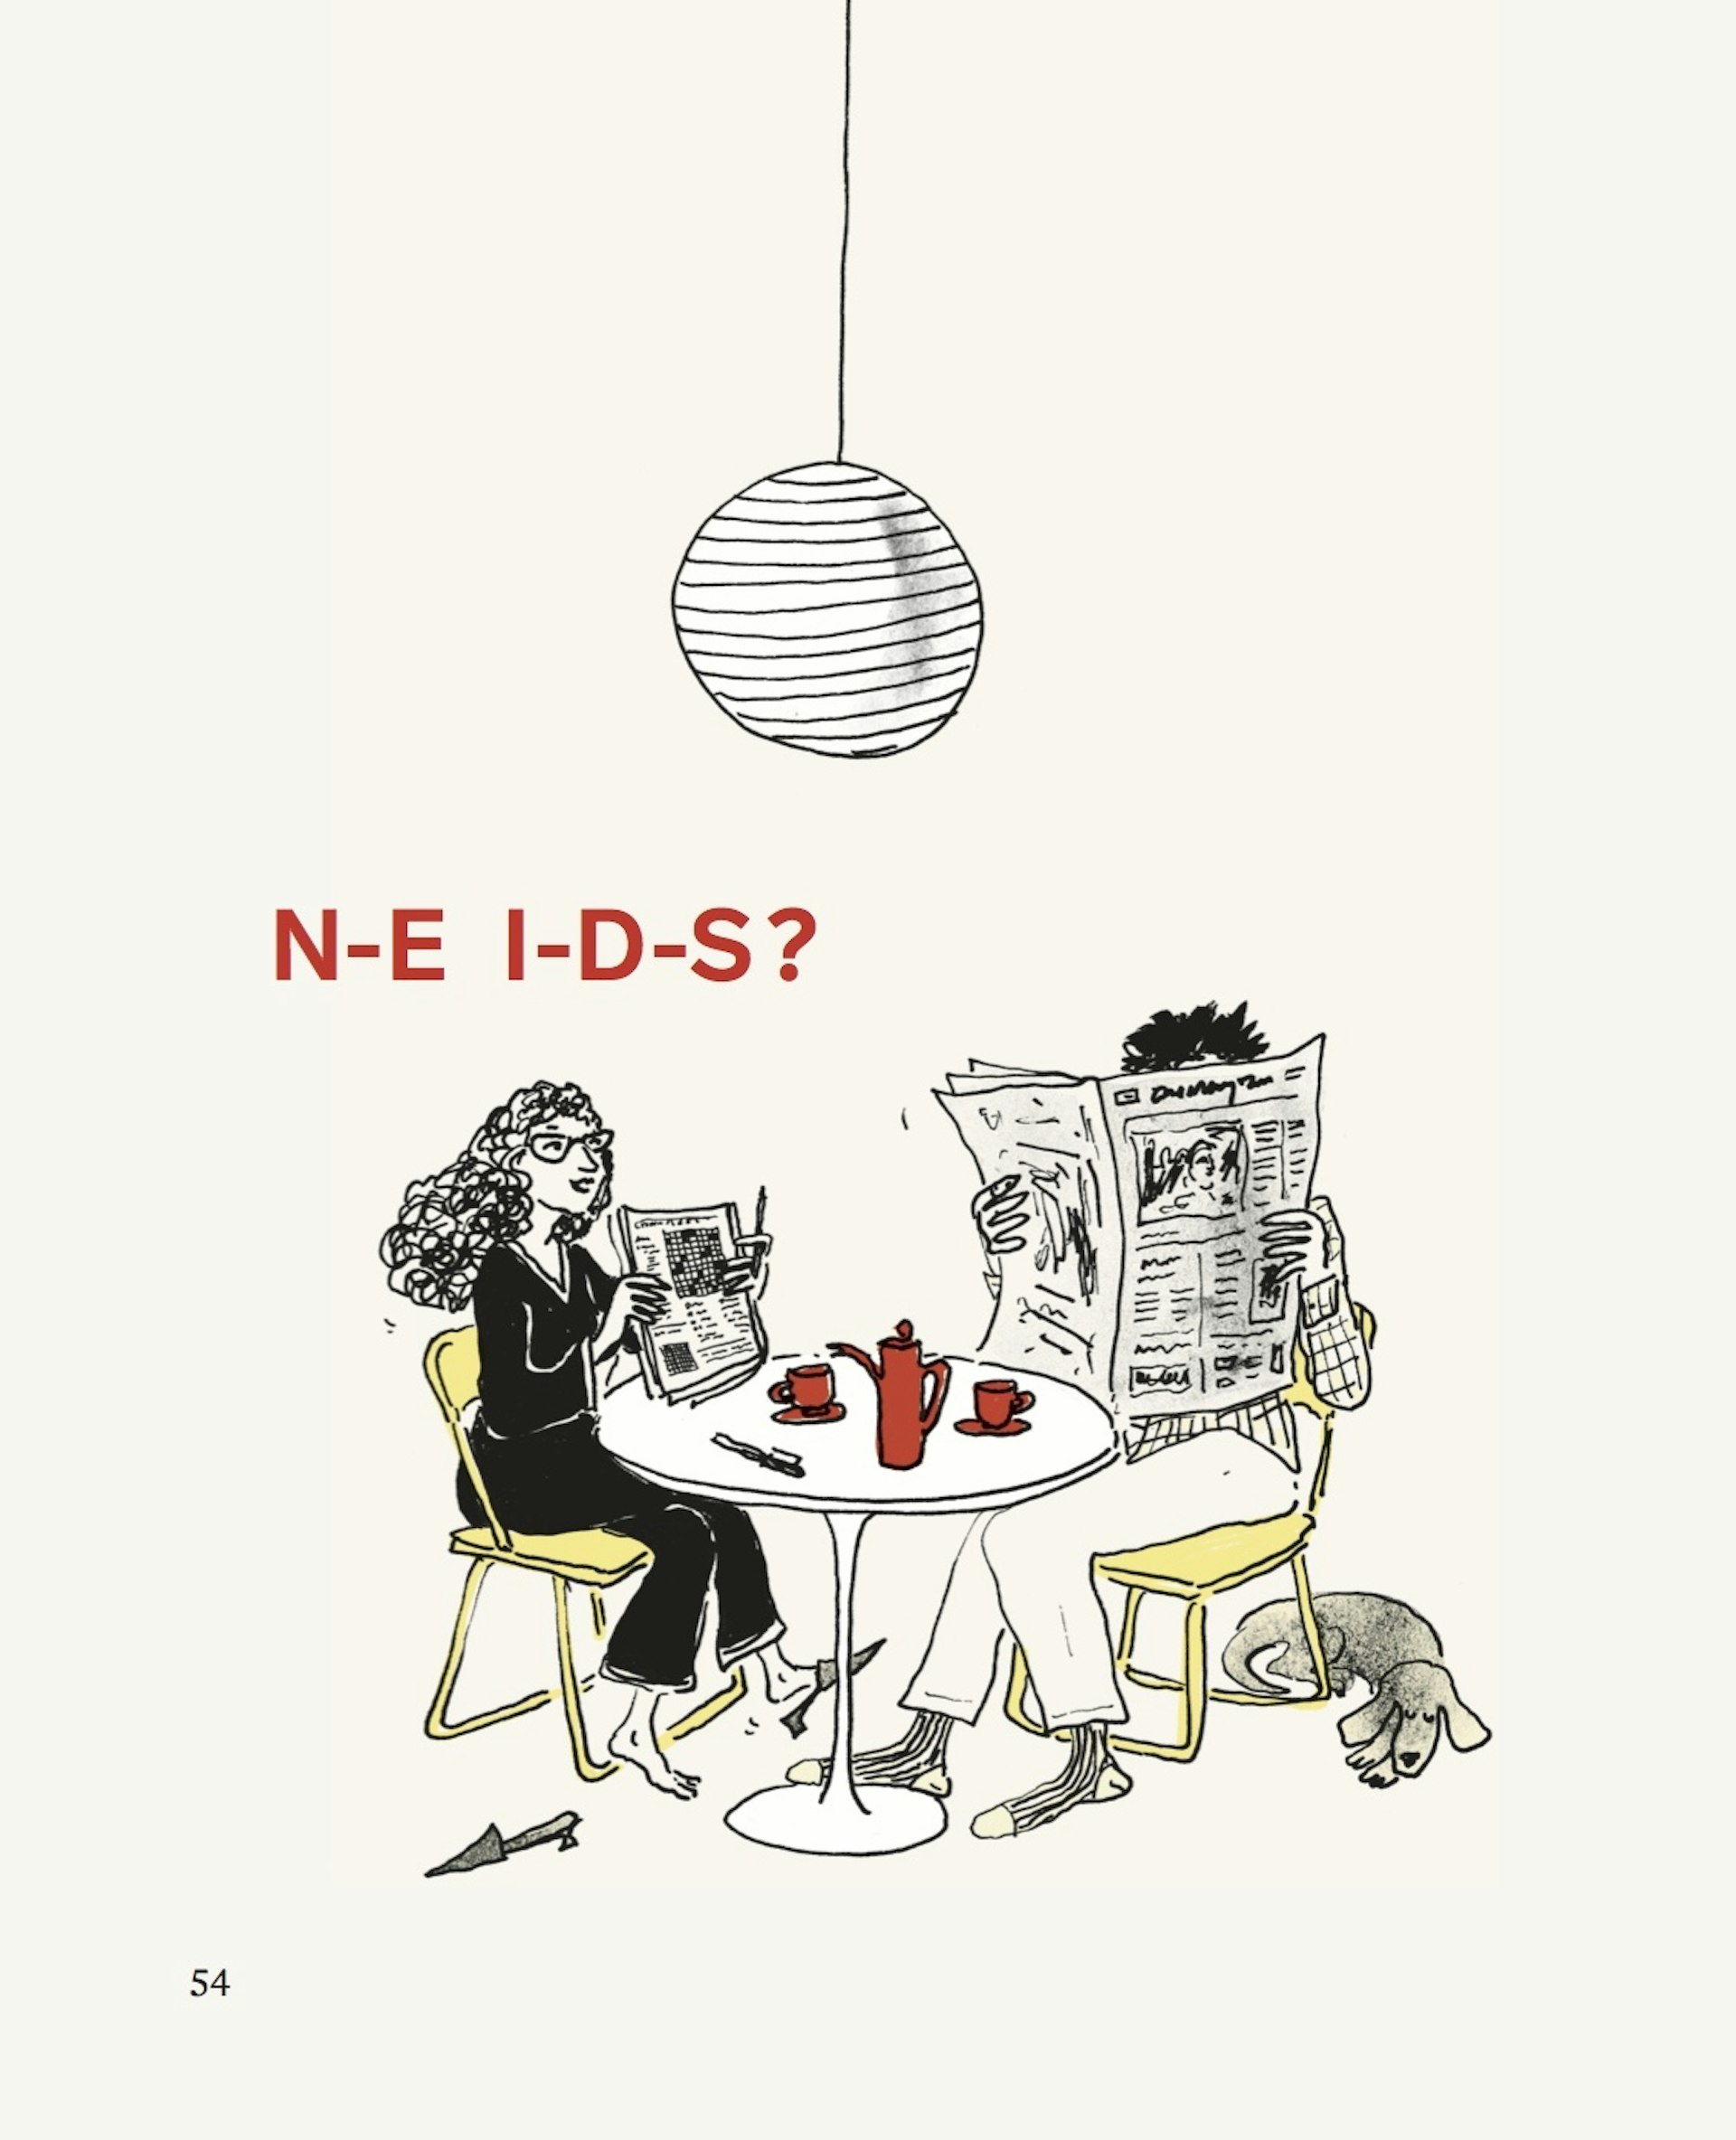 N-E I-D-S illustration